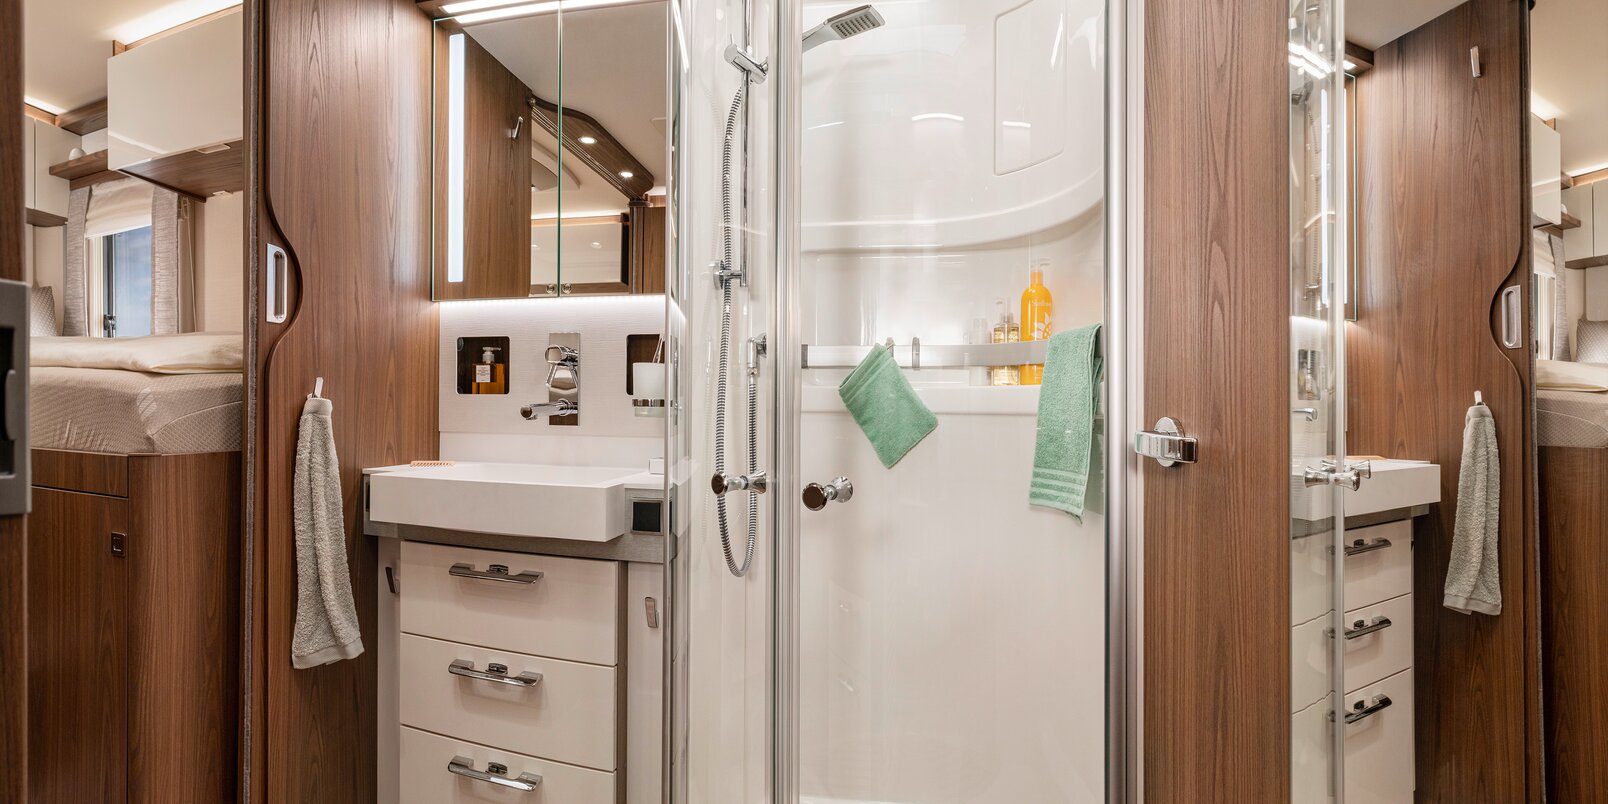 Baño en el HYMER B-ML I 880: mueble con espejo, cajones debajo del lavabo, ducha separada con puertas de vidrio auténtico, accesorios de baño